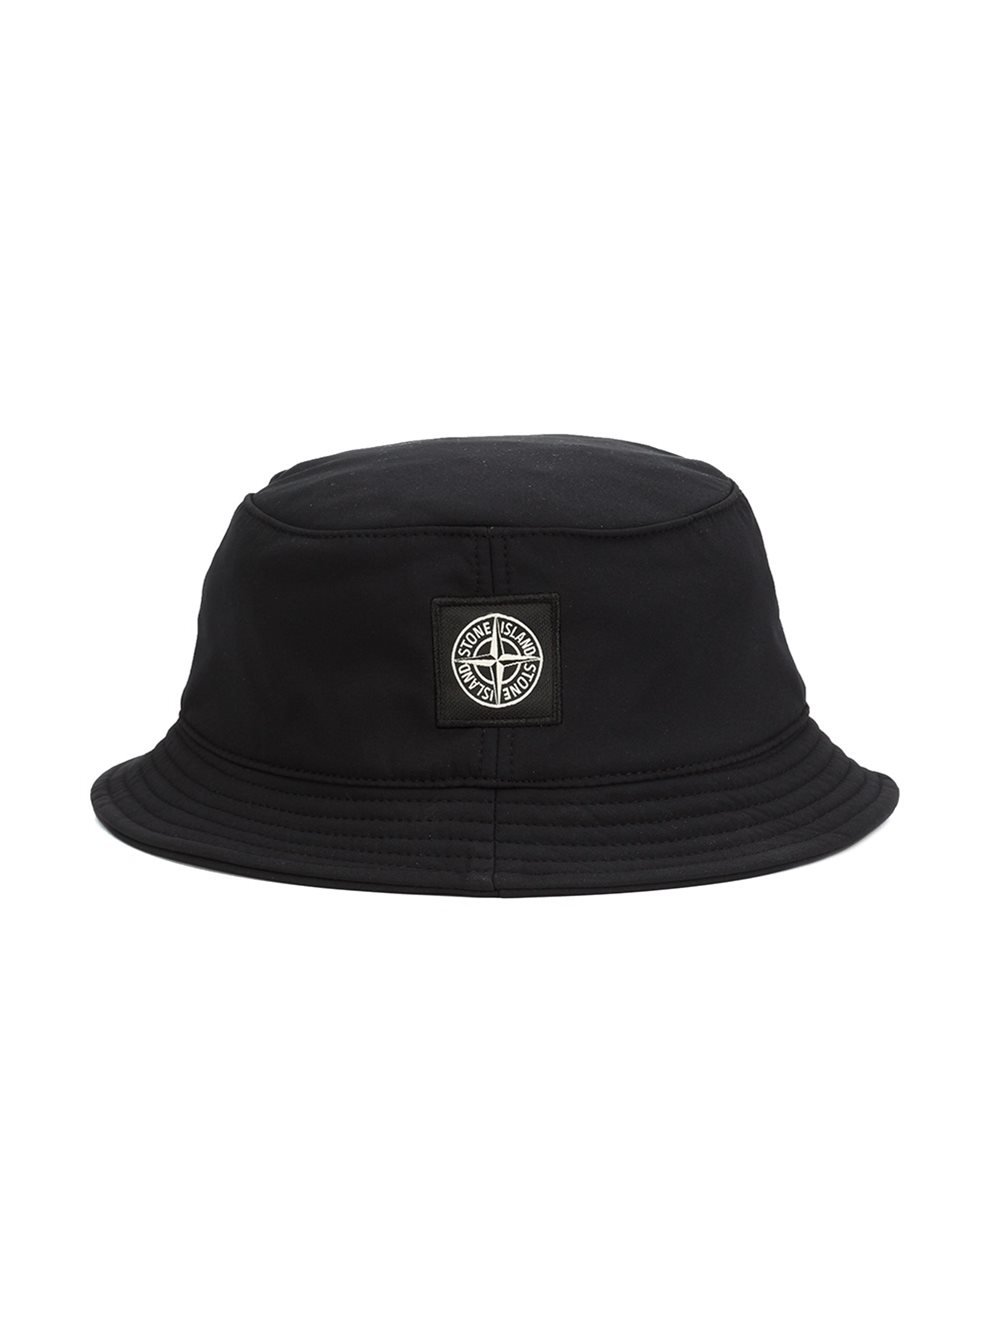 Stone Island Bucket Hat in Black for Men - Lyst